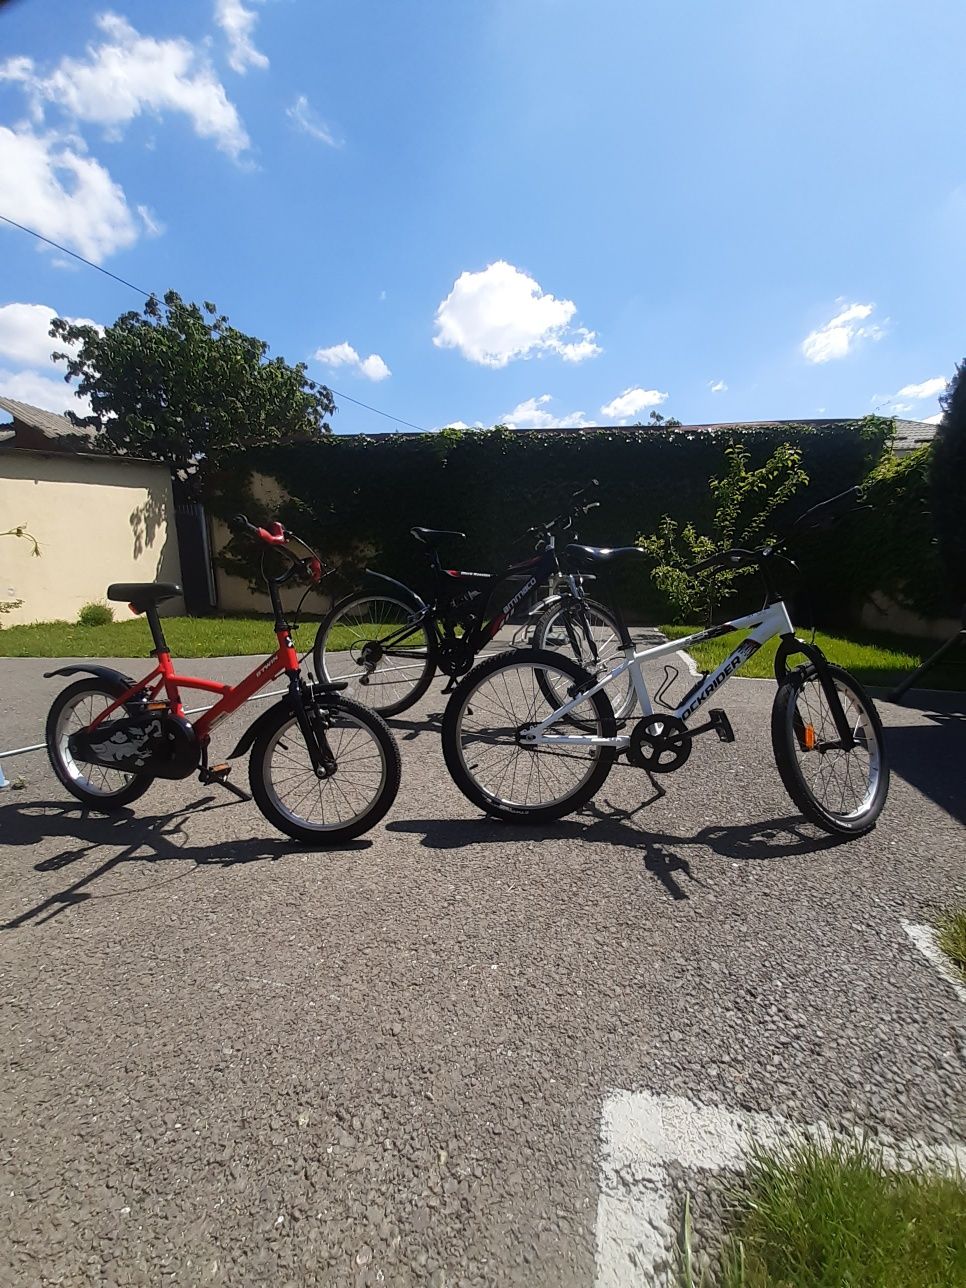 3 biciclete dintre care una ptr.adult bărbat și două ptr.copii.